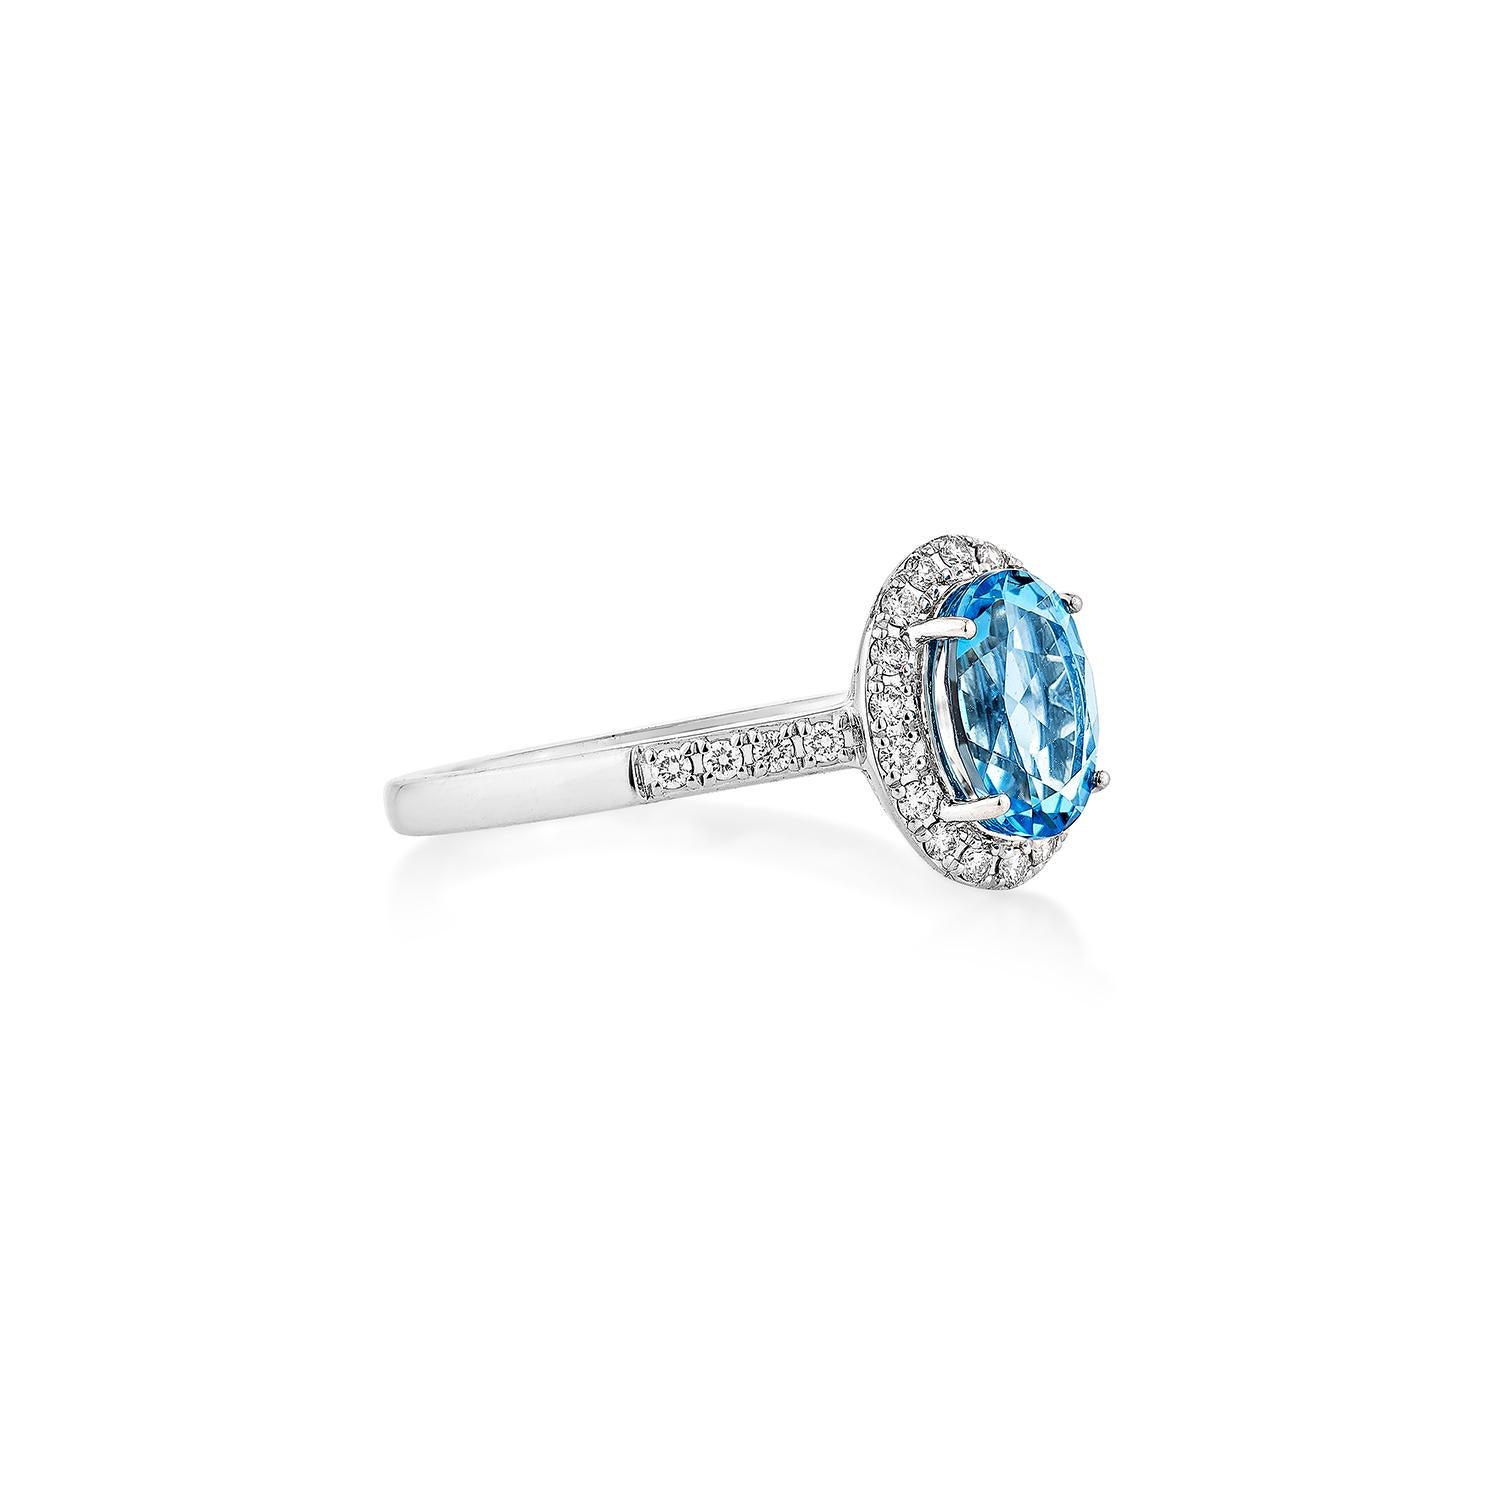 Präsentiert Ein schöner Schweizer Blautopas Fancy Ring ist perfekt für Menschen, die Qualität zu schätzen wissen und ihn zu jeder Gelegenheit oder Feier tragen möchten. Der Ring aus Weißgold mit Schweizer Blautopas und Diamanten bietet ein